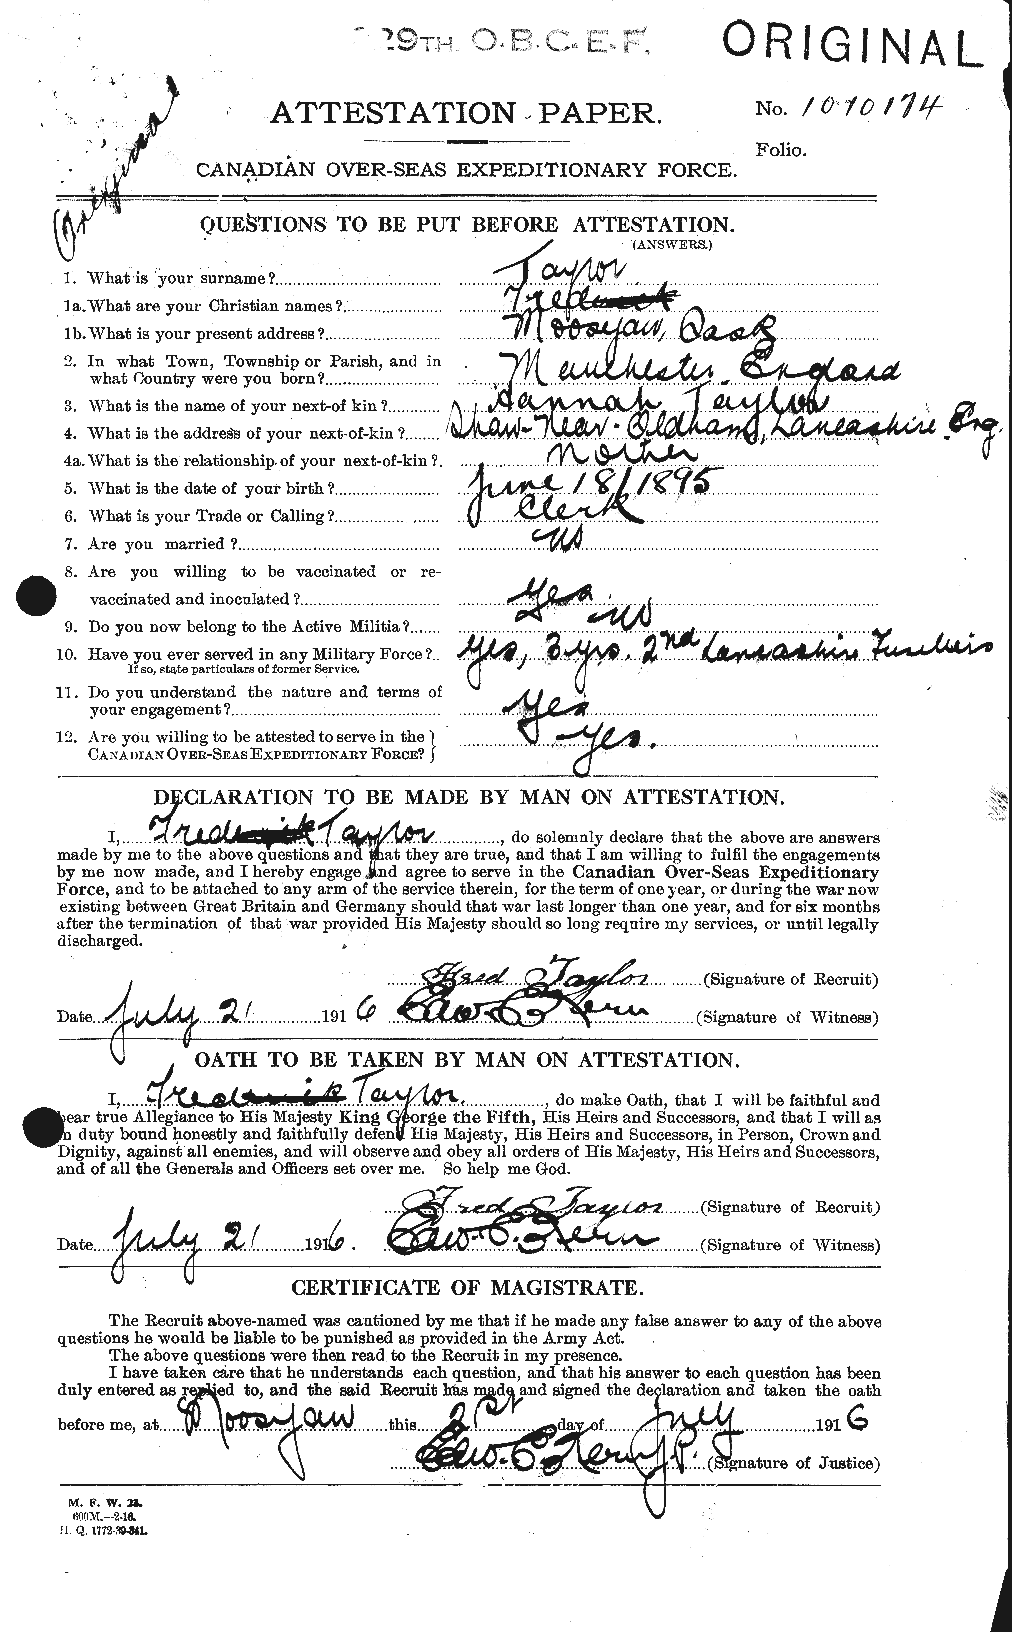 Dossiers du Personnel de la Première Guerre mondiale - CEC 625784a